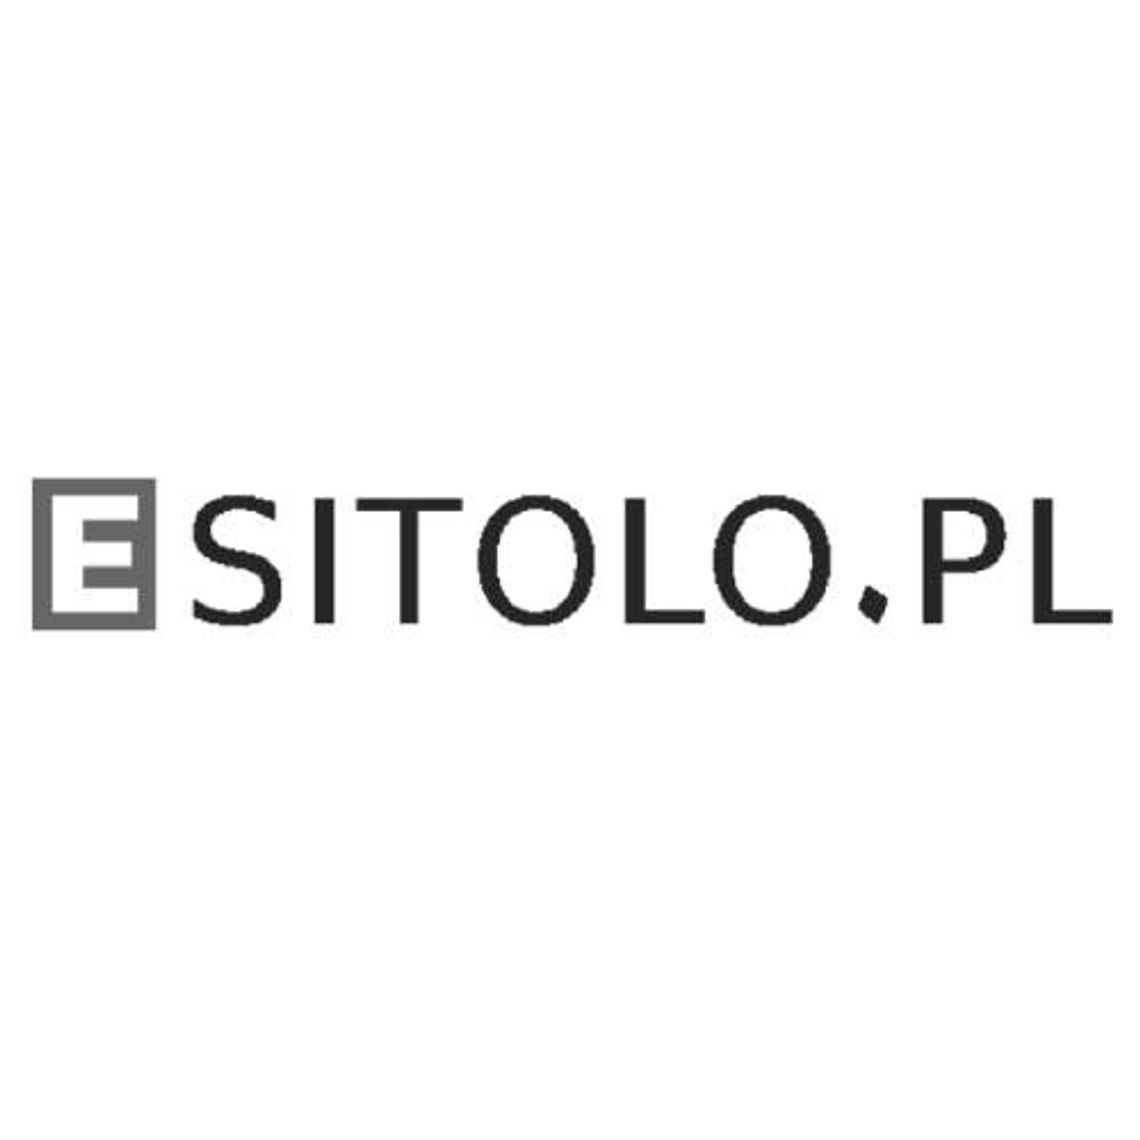 Esitolo.pl - kosmetyki, chemia gospodarcza i akcesoria dla dzieci